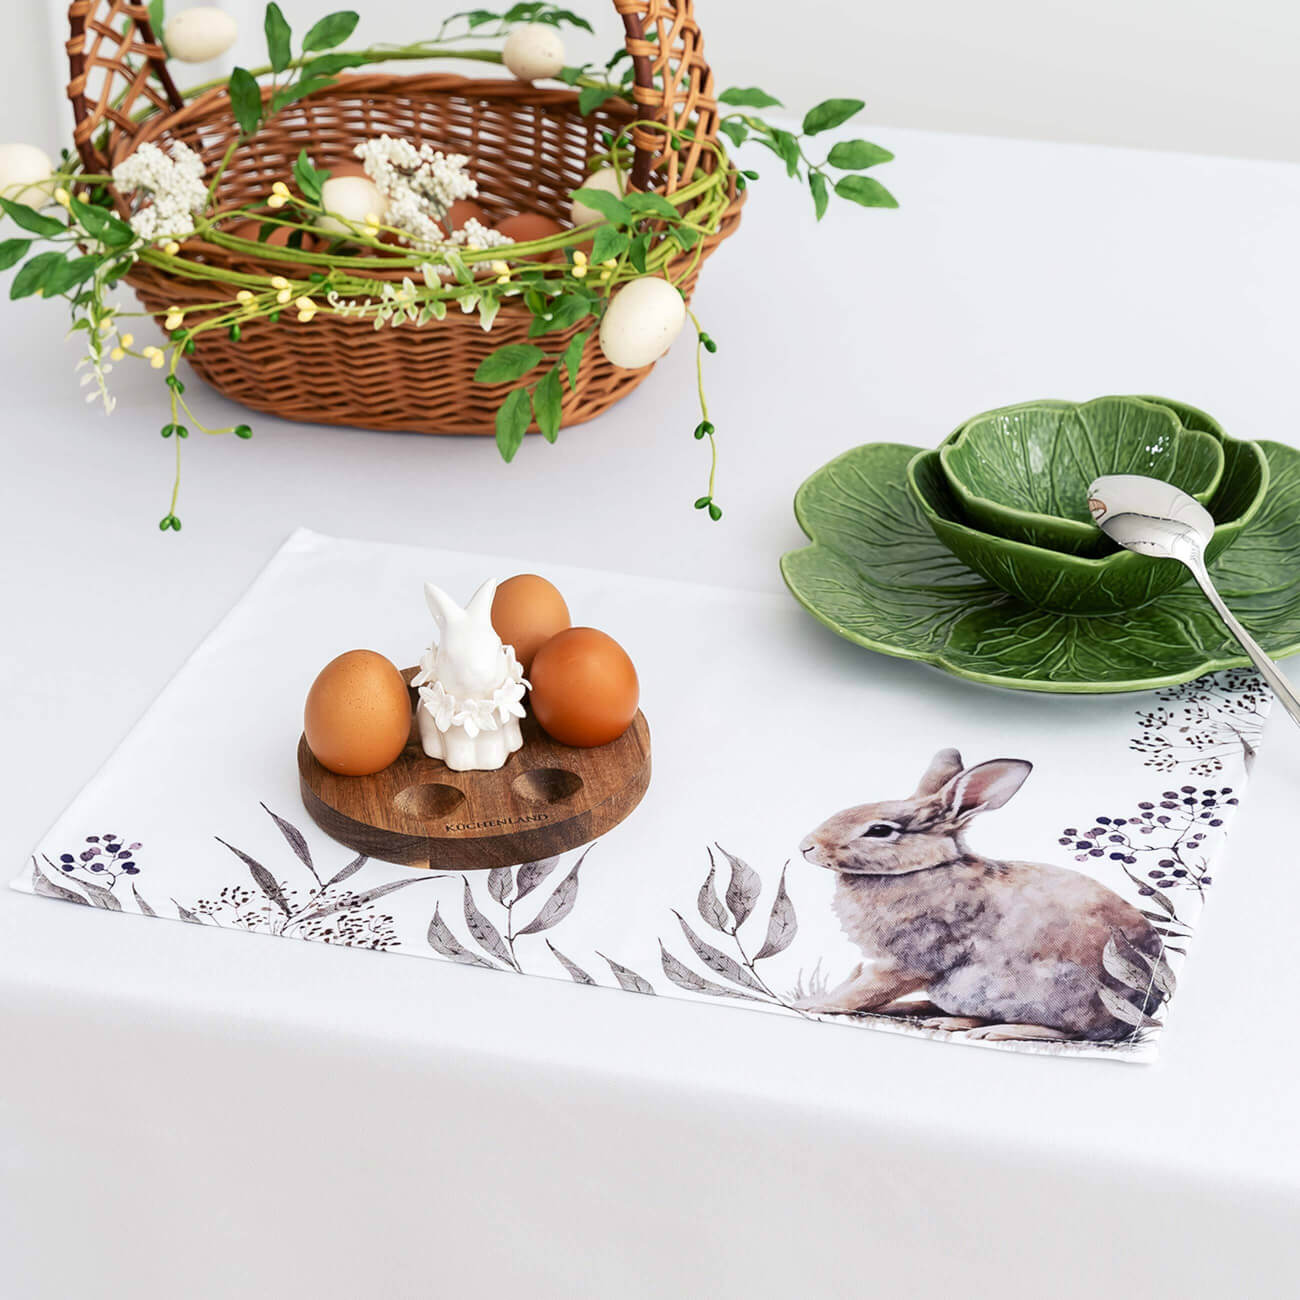 Салфетка под приборы, 30x45 см, полиэстер, белая, Кролик в листве, Natural Easter дорожка настольная 40x160 см полиэстер белая кролик в ах easter